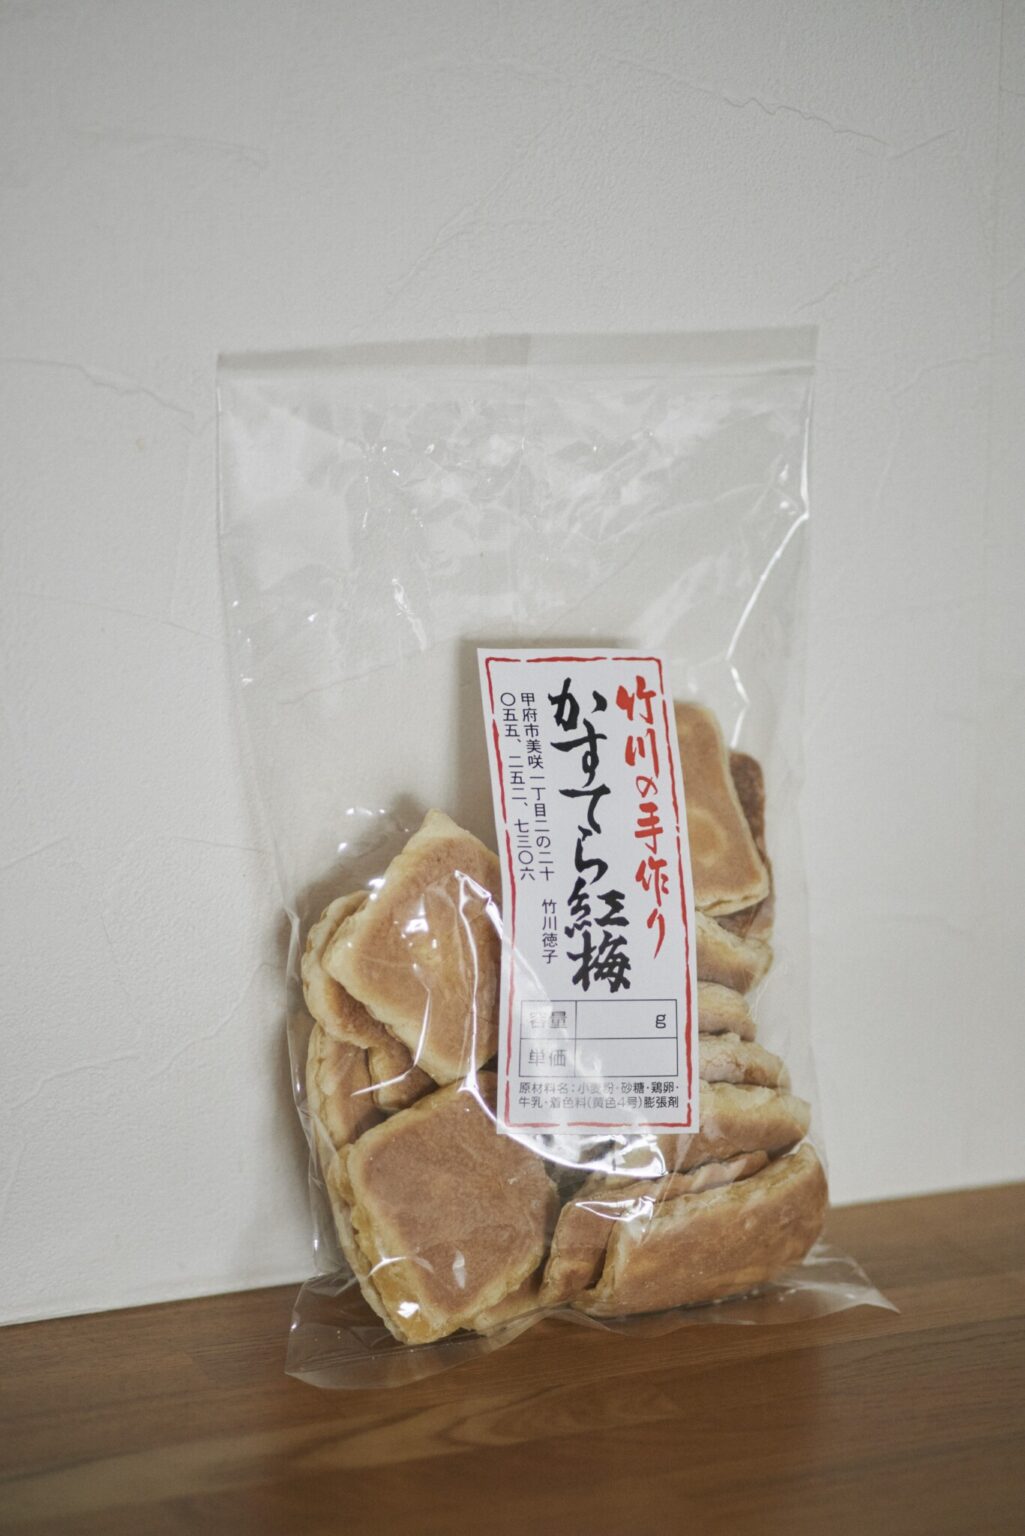 寿木さんが持参した甲府の名物菓子「かすてら紅梅」。素朴な味がクセになる。